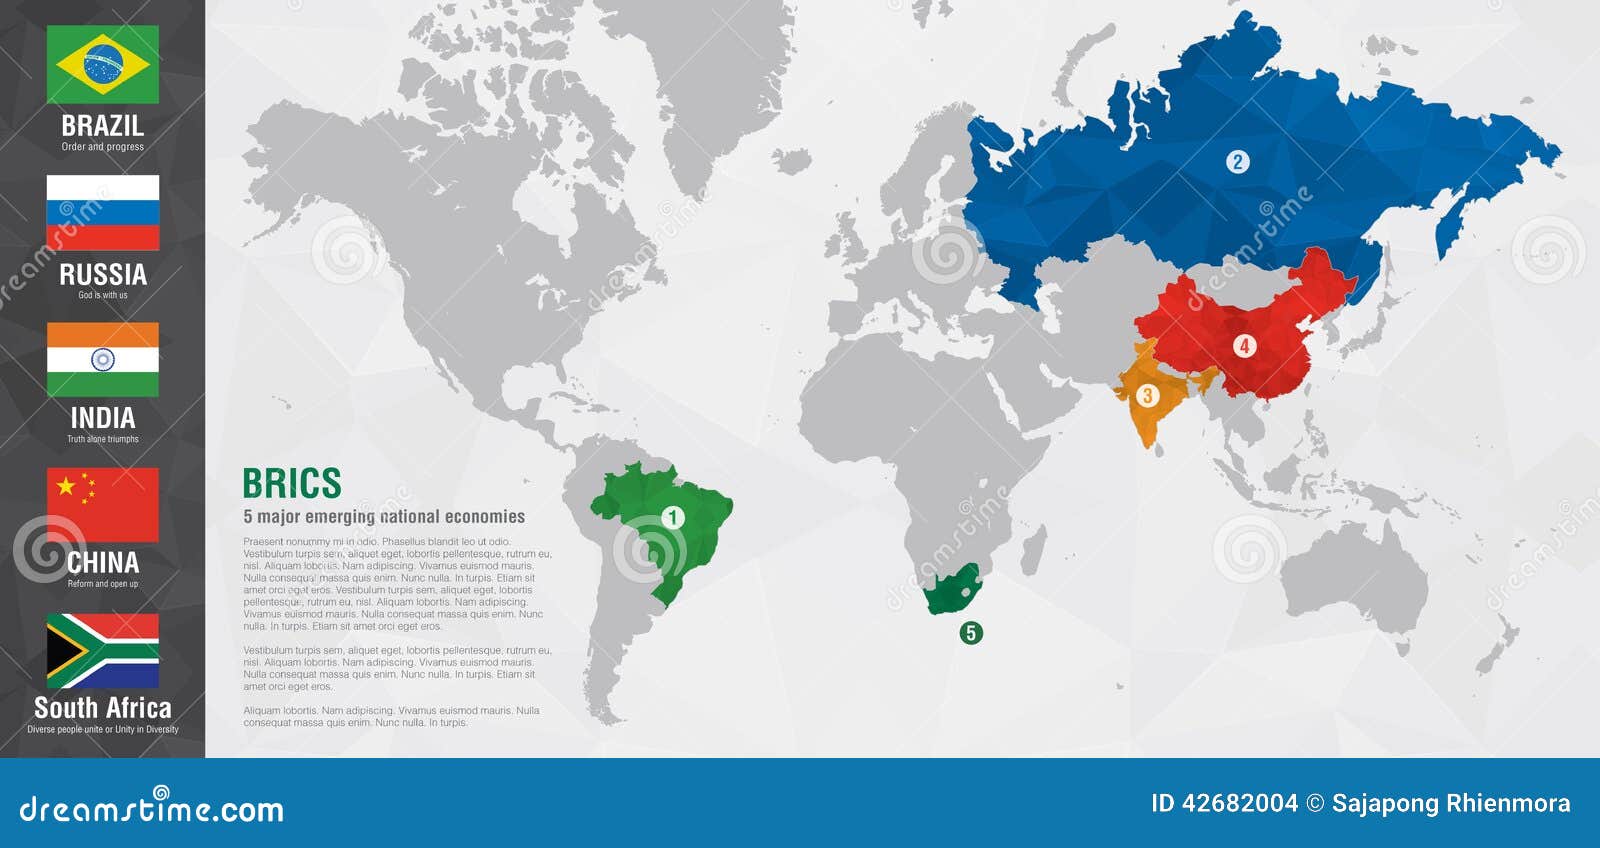 Включи новые страны. Страны БРИКС на карте. Карта ШОС И БРИКС. Карта БРИКС 2022.